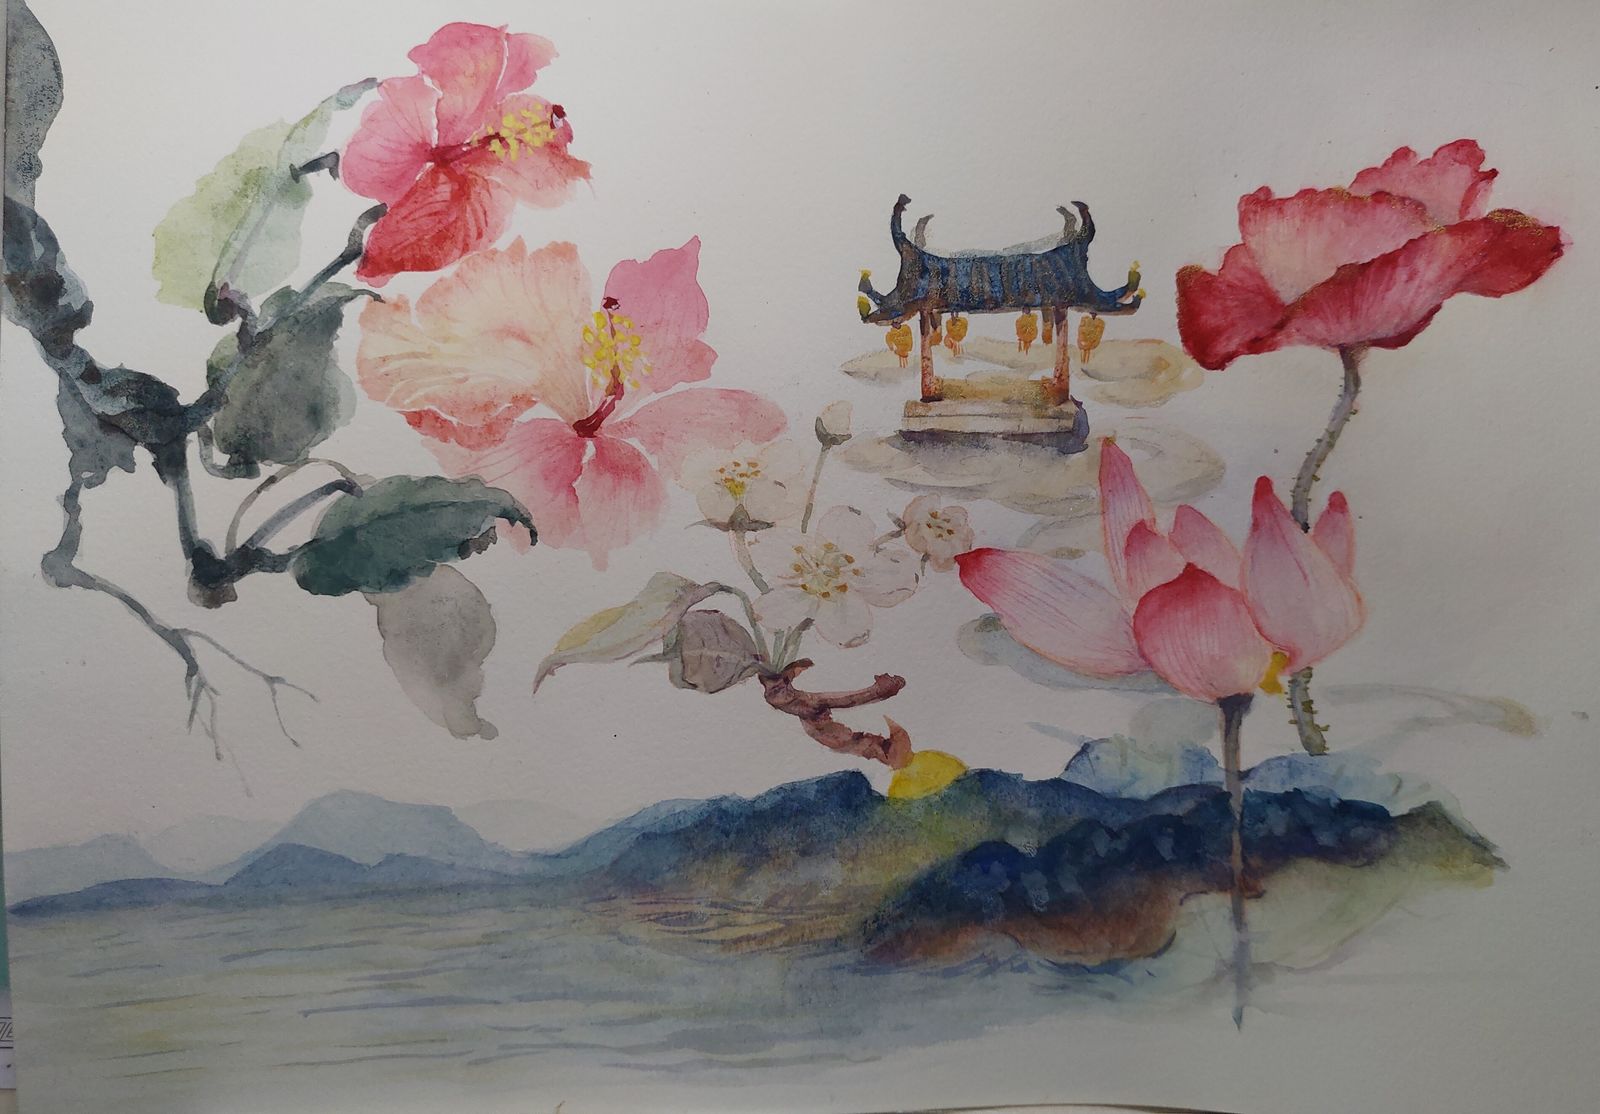 锦绣山河插画图片壁纸